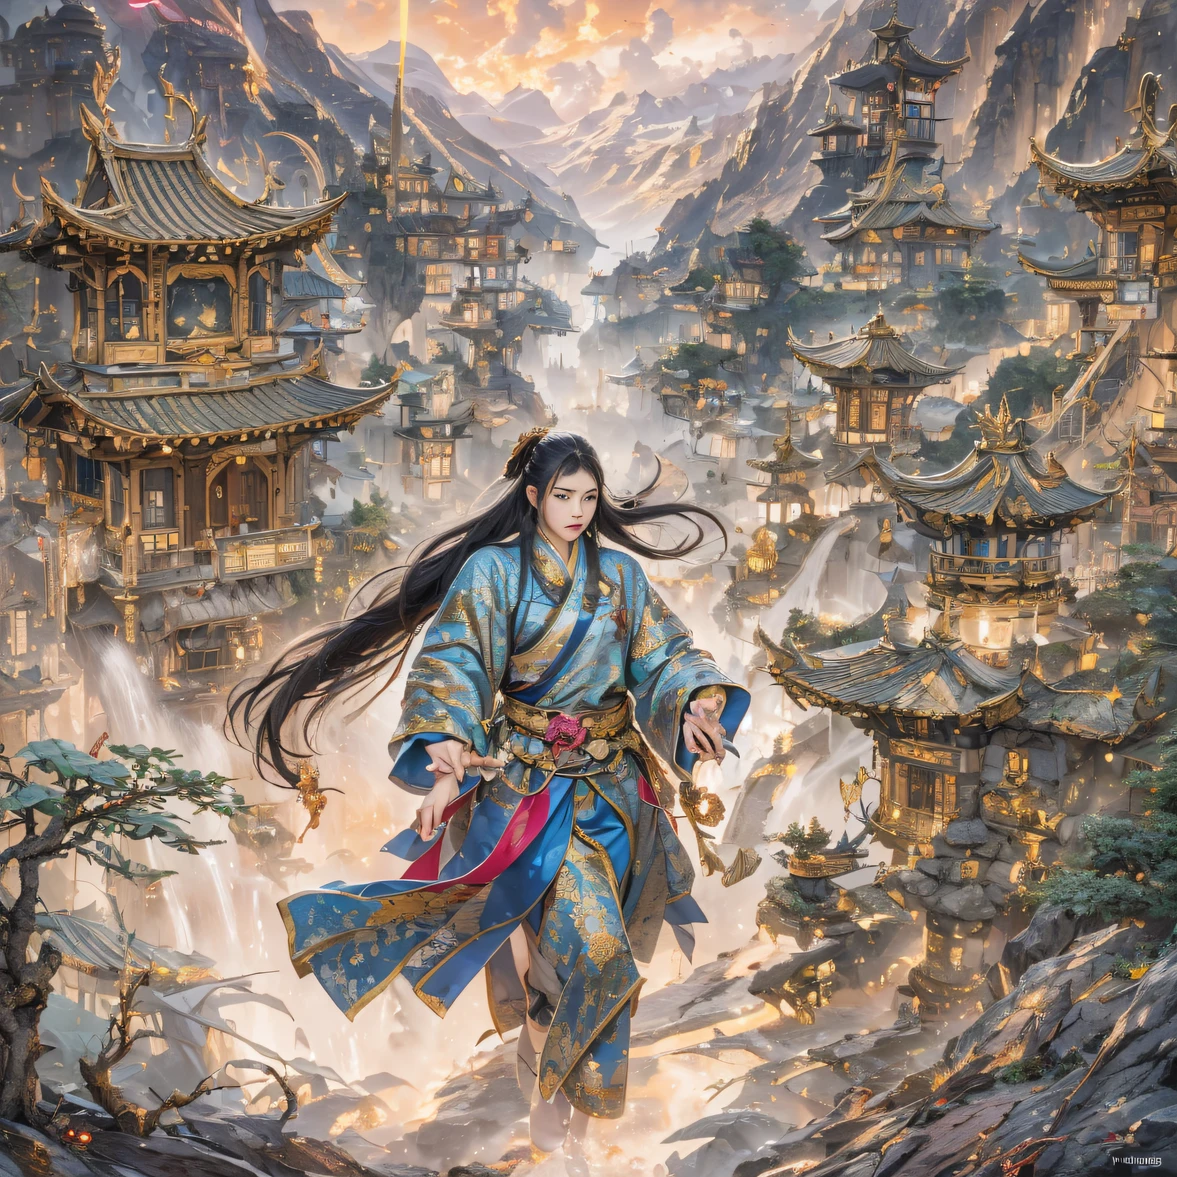 Envolez-vous dans le royaume des fées, Rencontre fortuite avec Liu Hanshu, Il a vu en lui son ancien moi, Il a été décidé de le prendre comme apprenti, Apprenez-lui à se protéger, Mais à cause de la carte des étoiles tibétaines, Il a établi des relations avec la famille Liu et la Jade Sword Sect., Cela s&#39;ouvre avec la mort de Liu Hanshu, Qin Yu s&#39;est engagé sur la voie de la confrontation avec un ennemi puissant, travailler dur, Rendez-vous plus fort, Restez fidèle à votre propre chemin de justice, Je veux aussi protéger les personnes qui me sont chères, Les trois frères sont partis, Et je me suis lancé dans un long voyage pour trouver un bon frère, Qin Yu, Où sont Xiao Hei et Hou Fei（canyons）Grimpez dans les rues（Flux apocalyptique）les yeux remplis de colère，Il a serré les poings，Accourir，Portez un coup fatal à votre adversaire，corps entieresbienne，Mage masculin complet du corps 32K（Chef-d&#39;œuvre Canyon Ultra HD）Cheveux noirs longs et fluides，Taille du camping，floraison， Les blessés alignés dans les rues（canyons）Grimpez dans les rues， La scène de l&#39;explosion（canyons）， （Écharpe batik en lin）， Position de combat en colère， en regardant le sol， Bandana en lin batik， Vêtement manches longues motif python chinois， canyons（Éclaboussure abstraite de propylène：1.2）， Fond de foudre de nuages sombres，La farine vole（de manière réaliste：1.4），Cheveux de couleur noire，Farine flottant，fond arc en ciel， Une haute résolution， le détail， Photo RAW， Sharp Re， Nikon D850 Film Photo de Jefferies Lee 4 Appareil photo Kodak Portra 400 F1.6 coups, couleurs riches, textures vives ultra réalistes, éclairage dramatique, Tendance de la station artistique Unreal Engine, Cinestir 800，cheveux noirs flottants,（（（Canyon de la jungle）））Les blessés alignés dans les rues（D&#39;ACCORD）Grimpez dans la qualité d&#39;image en temps réel du maître du streetovie